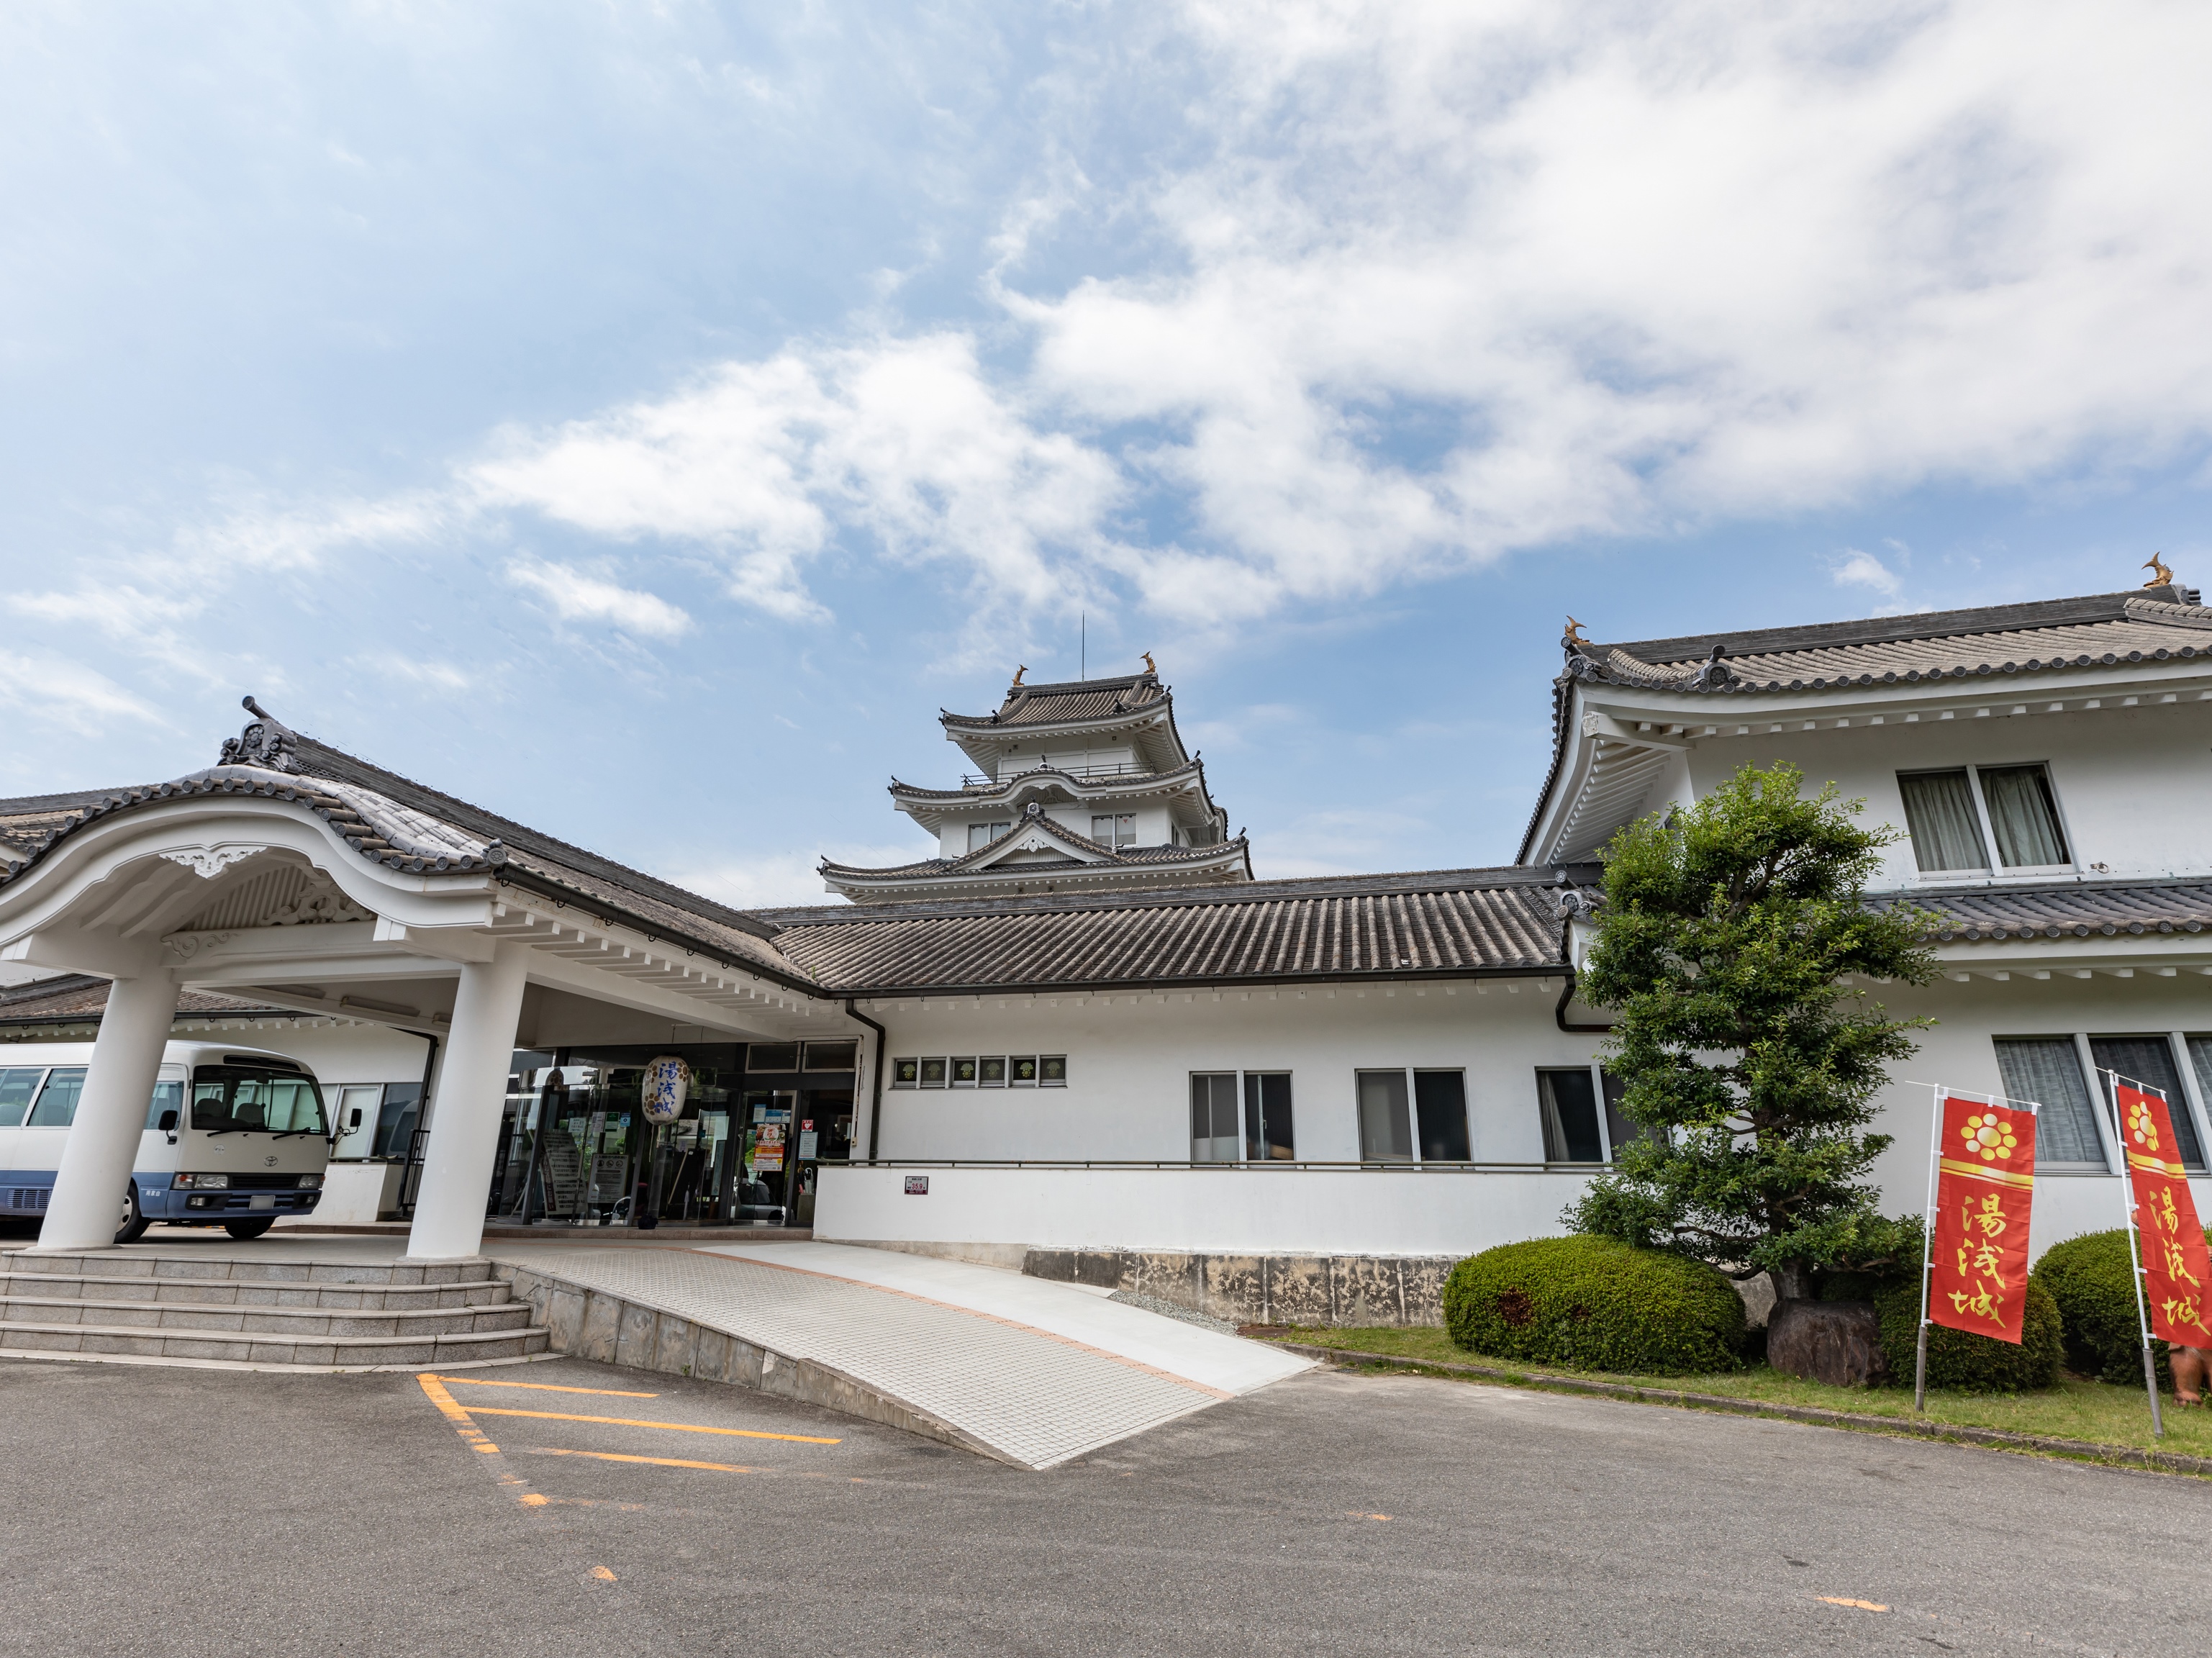 パートナーズハウスゆあさ 和歌山県湯浅町の貸し別荘 コテージ 旅行と宿のクリップ